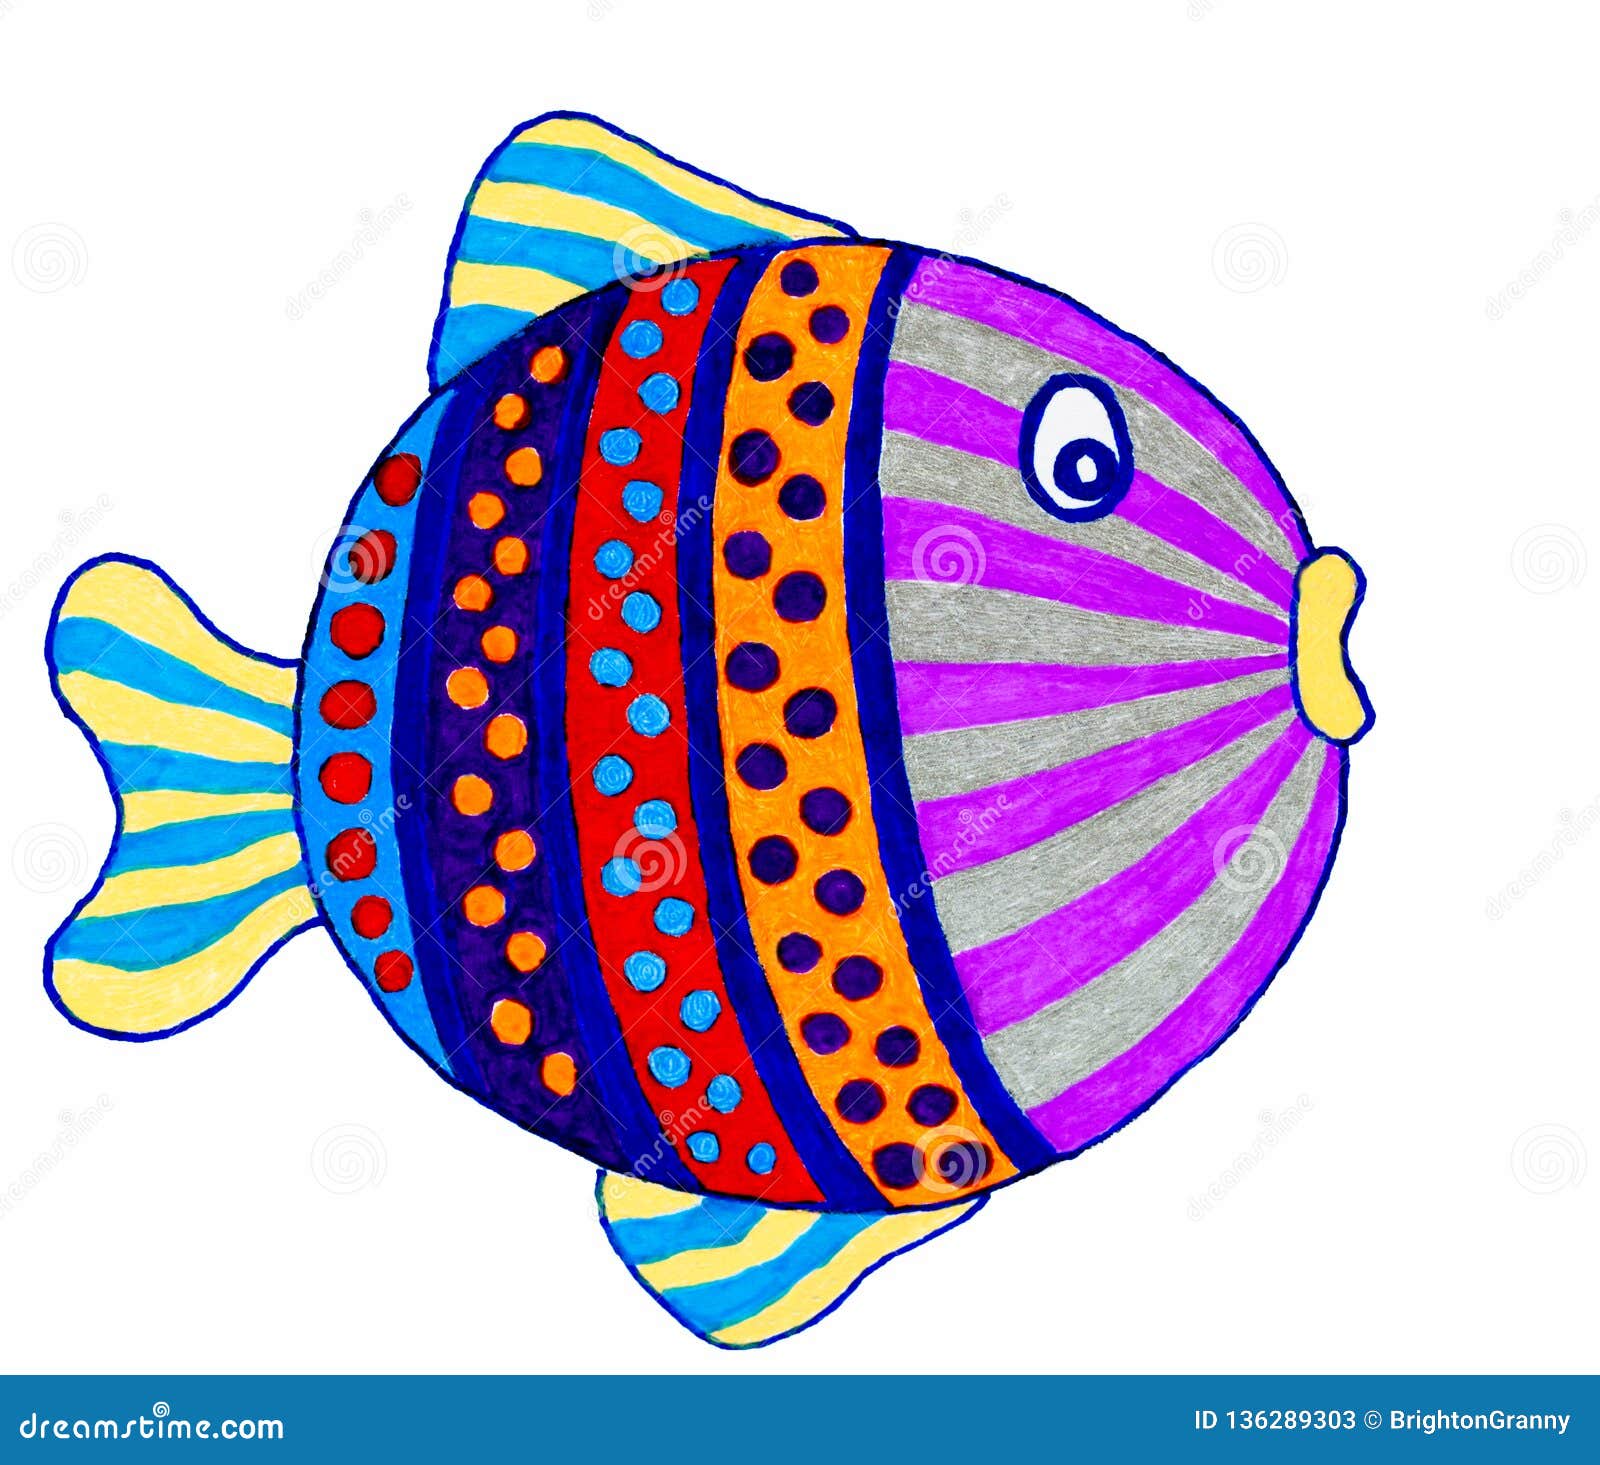 Cute Fish Drawing Beautiful Art - Drawing Skill